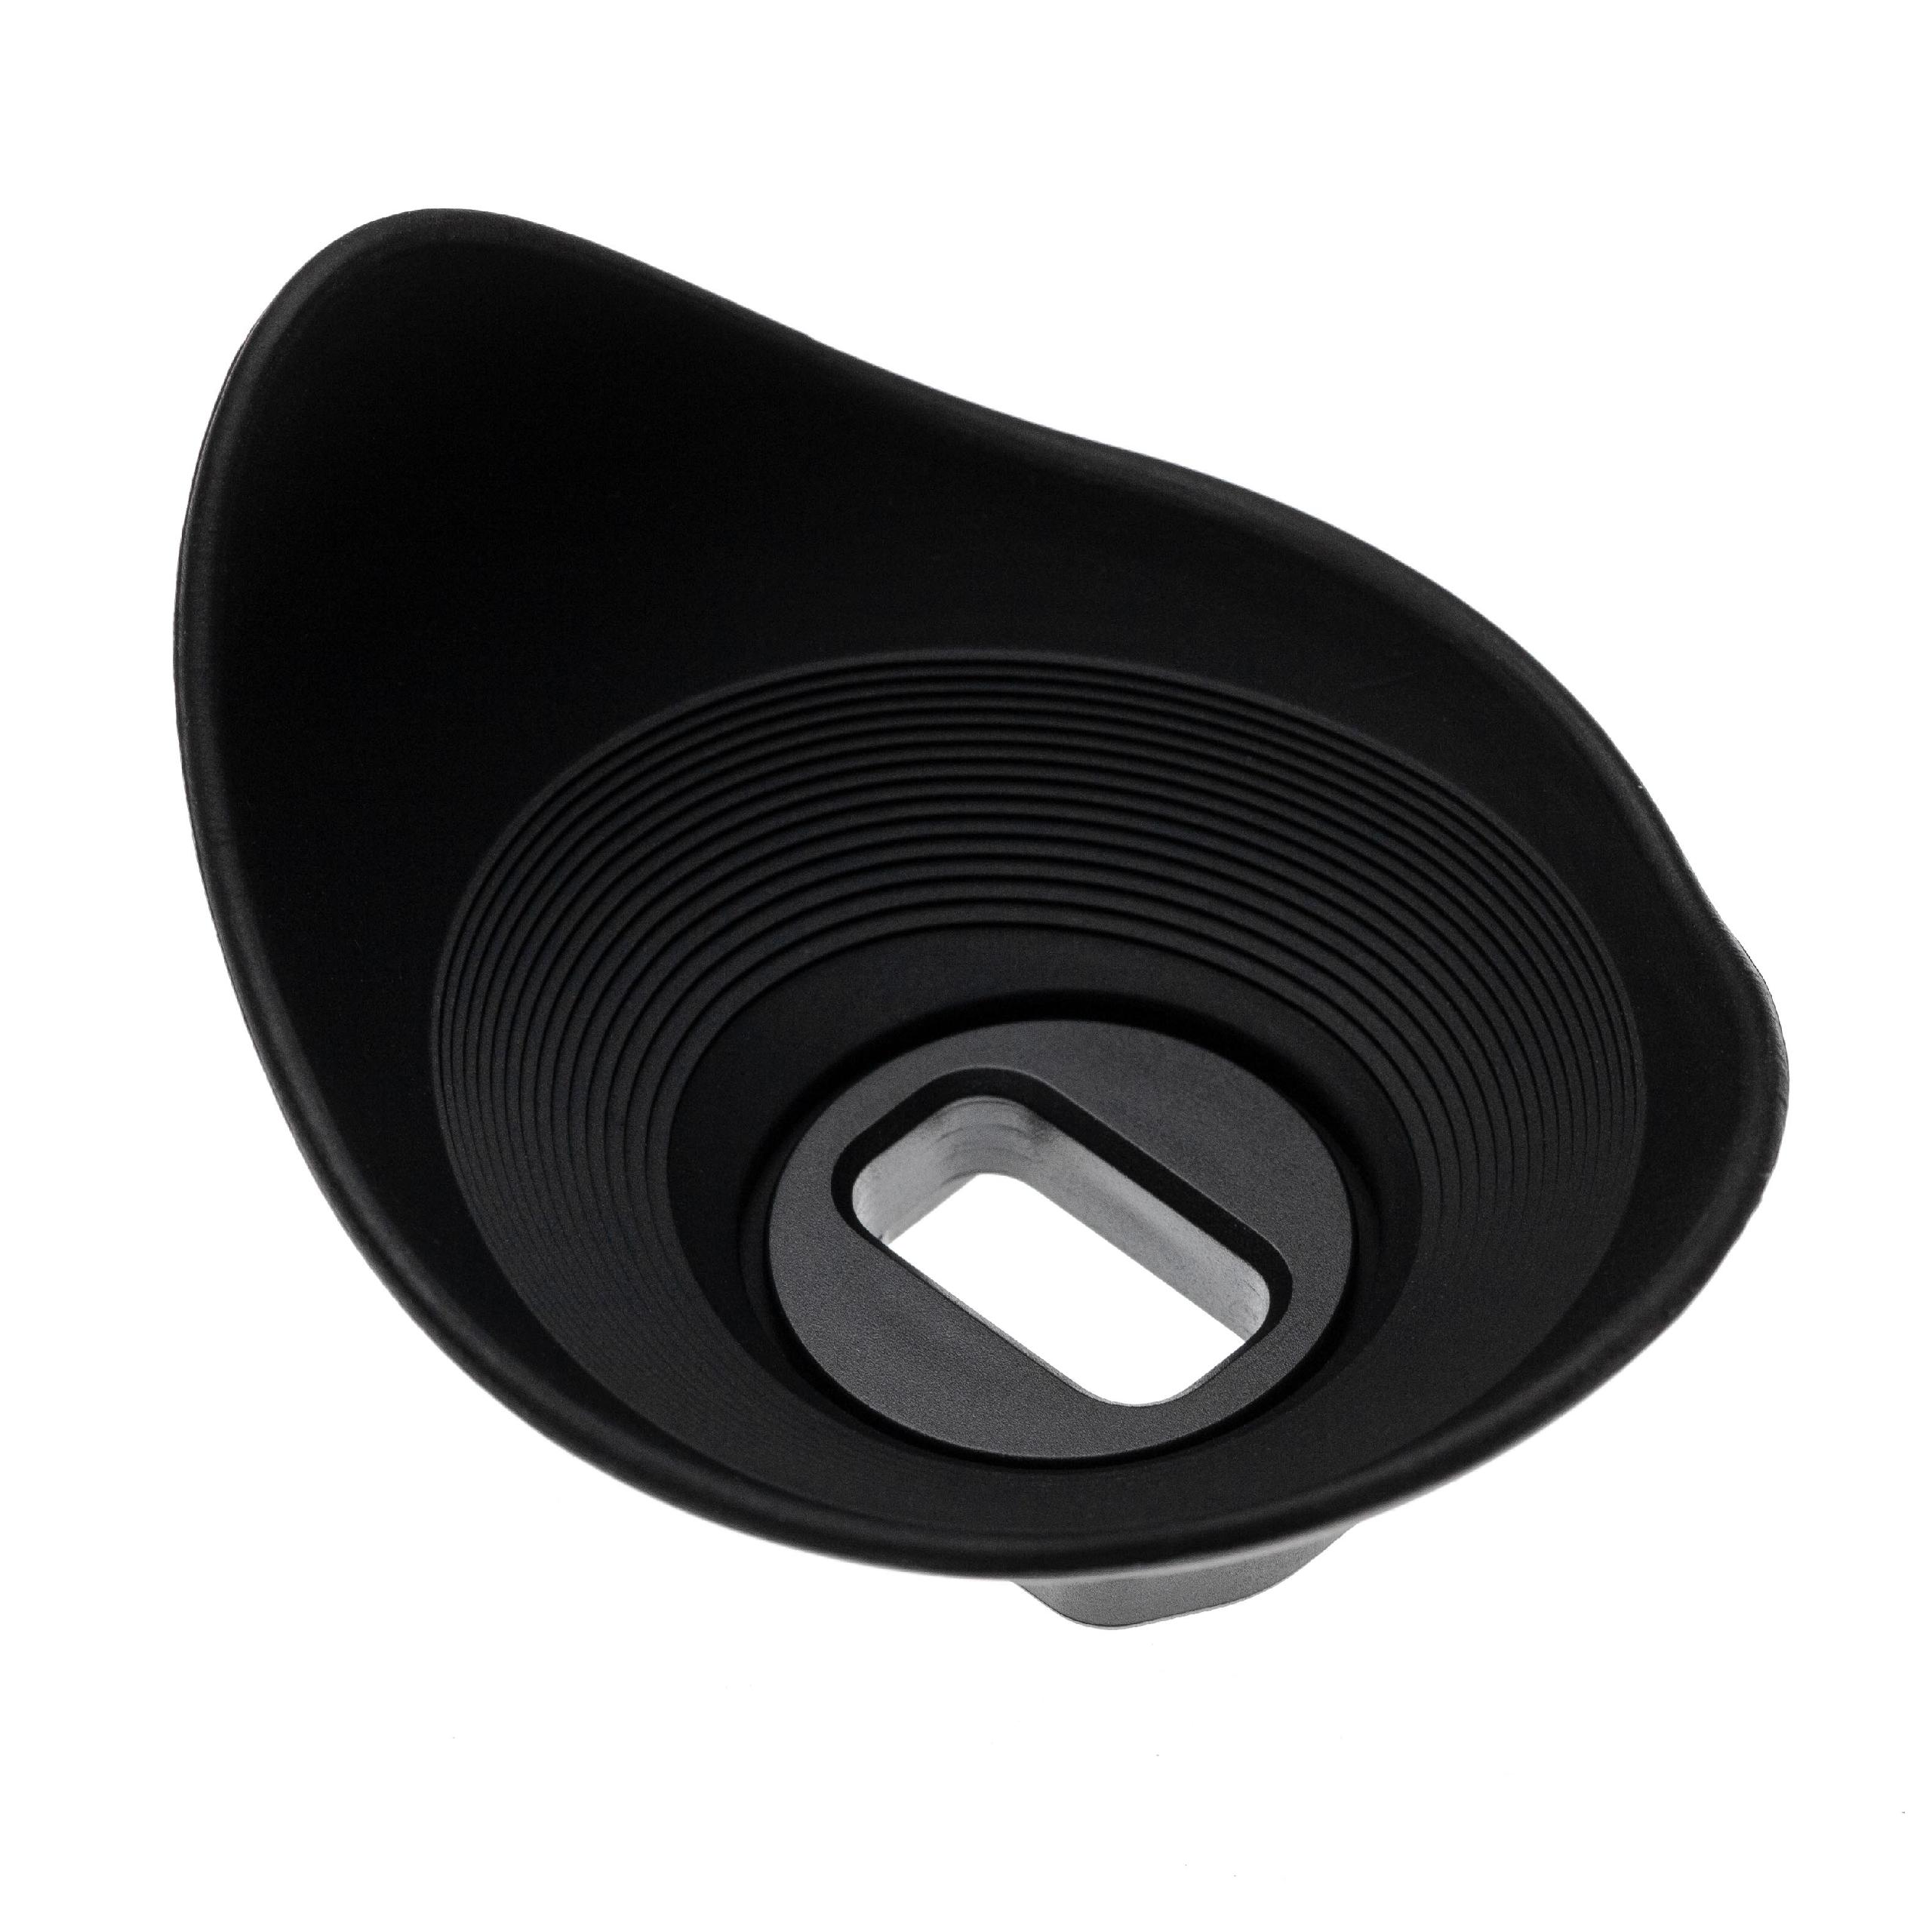 Augenmuschel Sucher als Ersatz für Sony FDA-EP17 für Sony 6500 u.a., Tropfenform